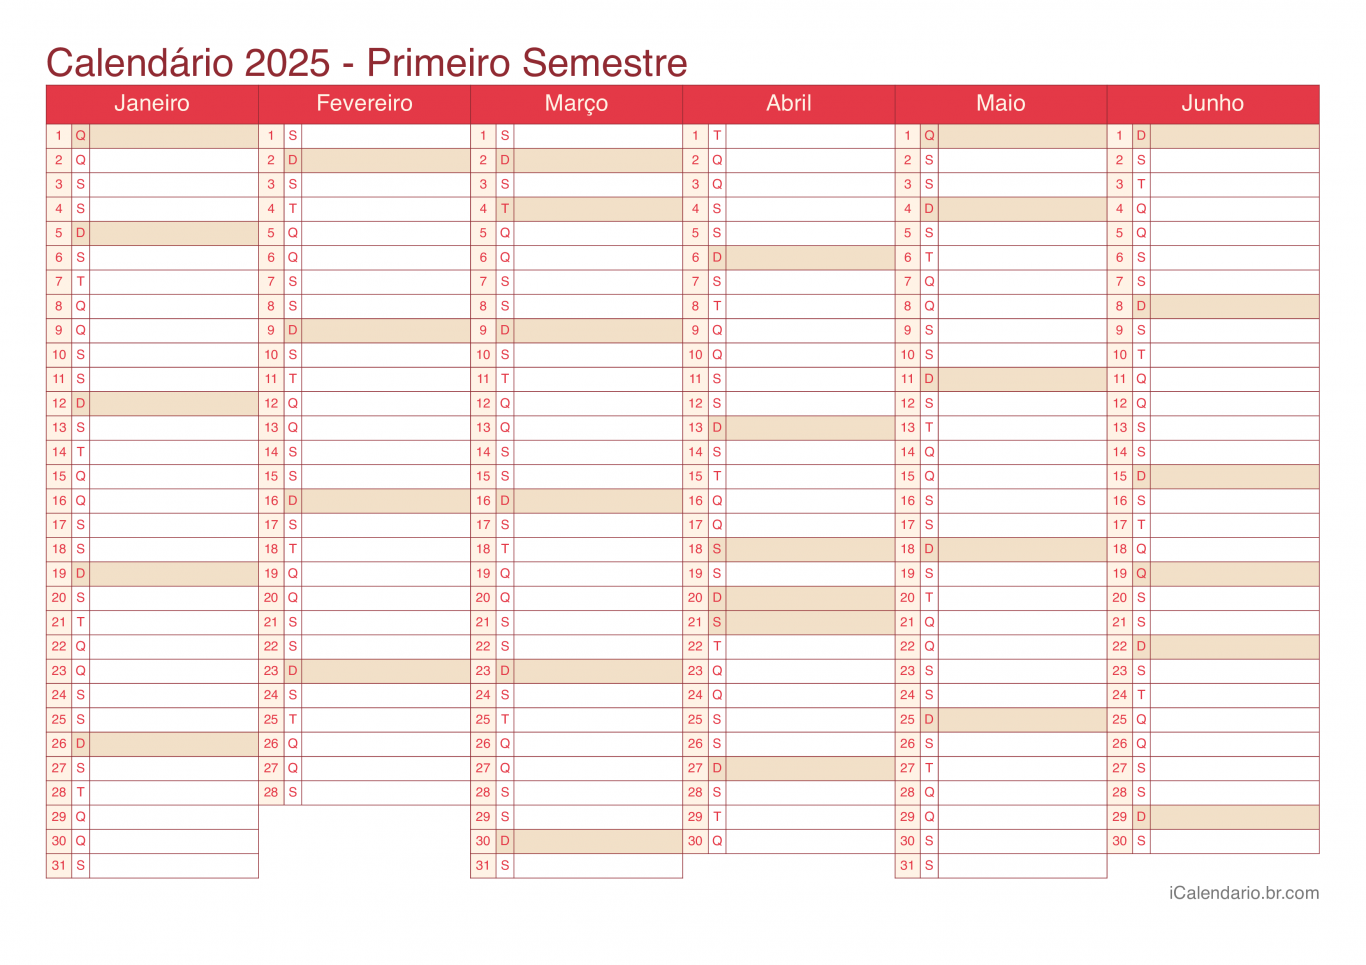 Calendário por semestre 2025 - Cherry